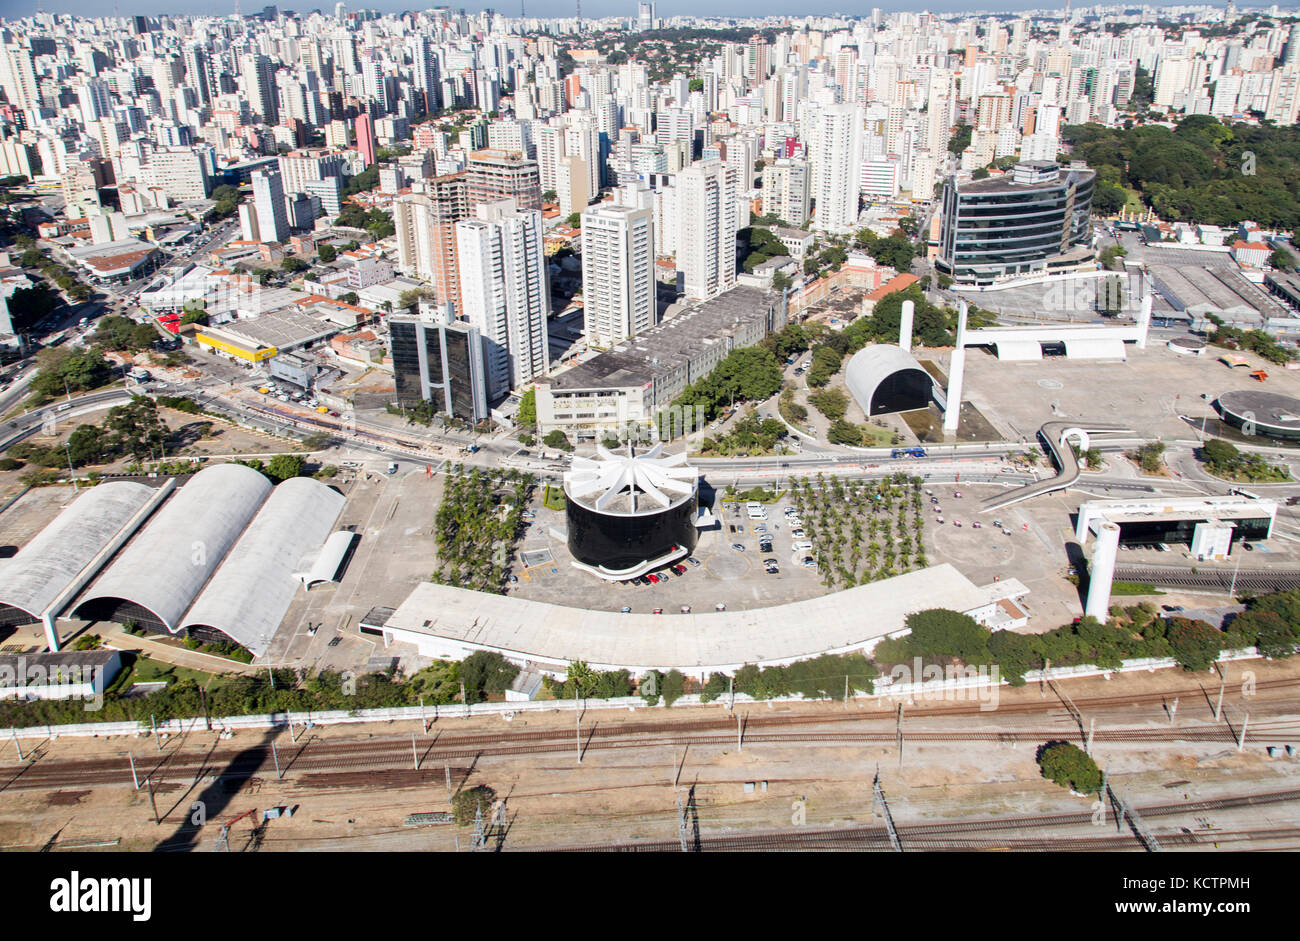 Vue aérienne de Memorial da América Latina, dans la ville de São Paulo - Brésil. Banque D'Images